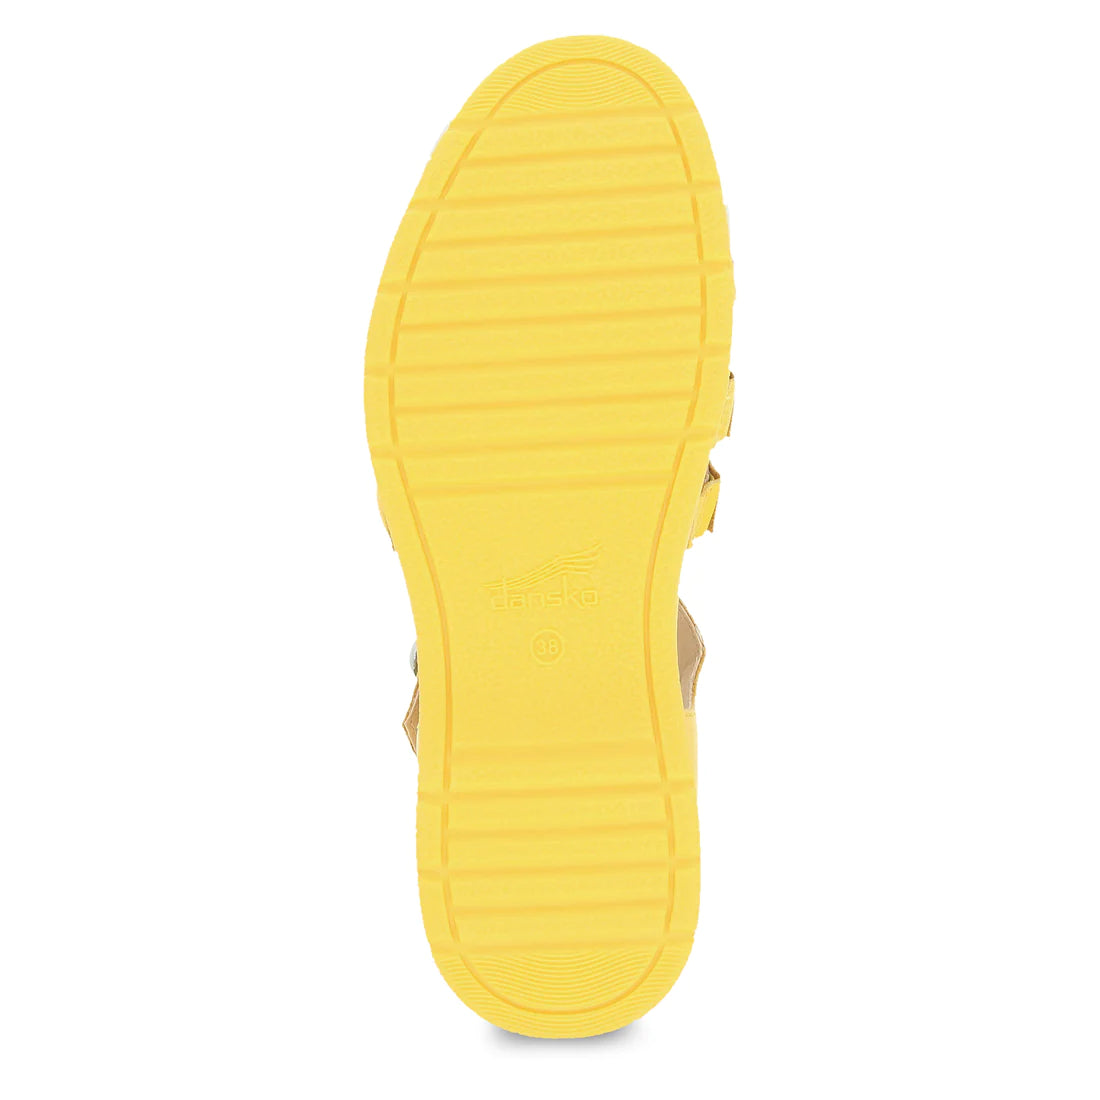 Dansko Women's Roxie Sandal - Yellow Nappa